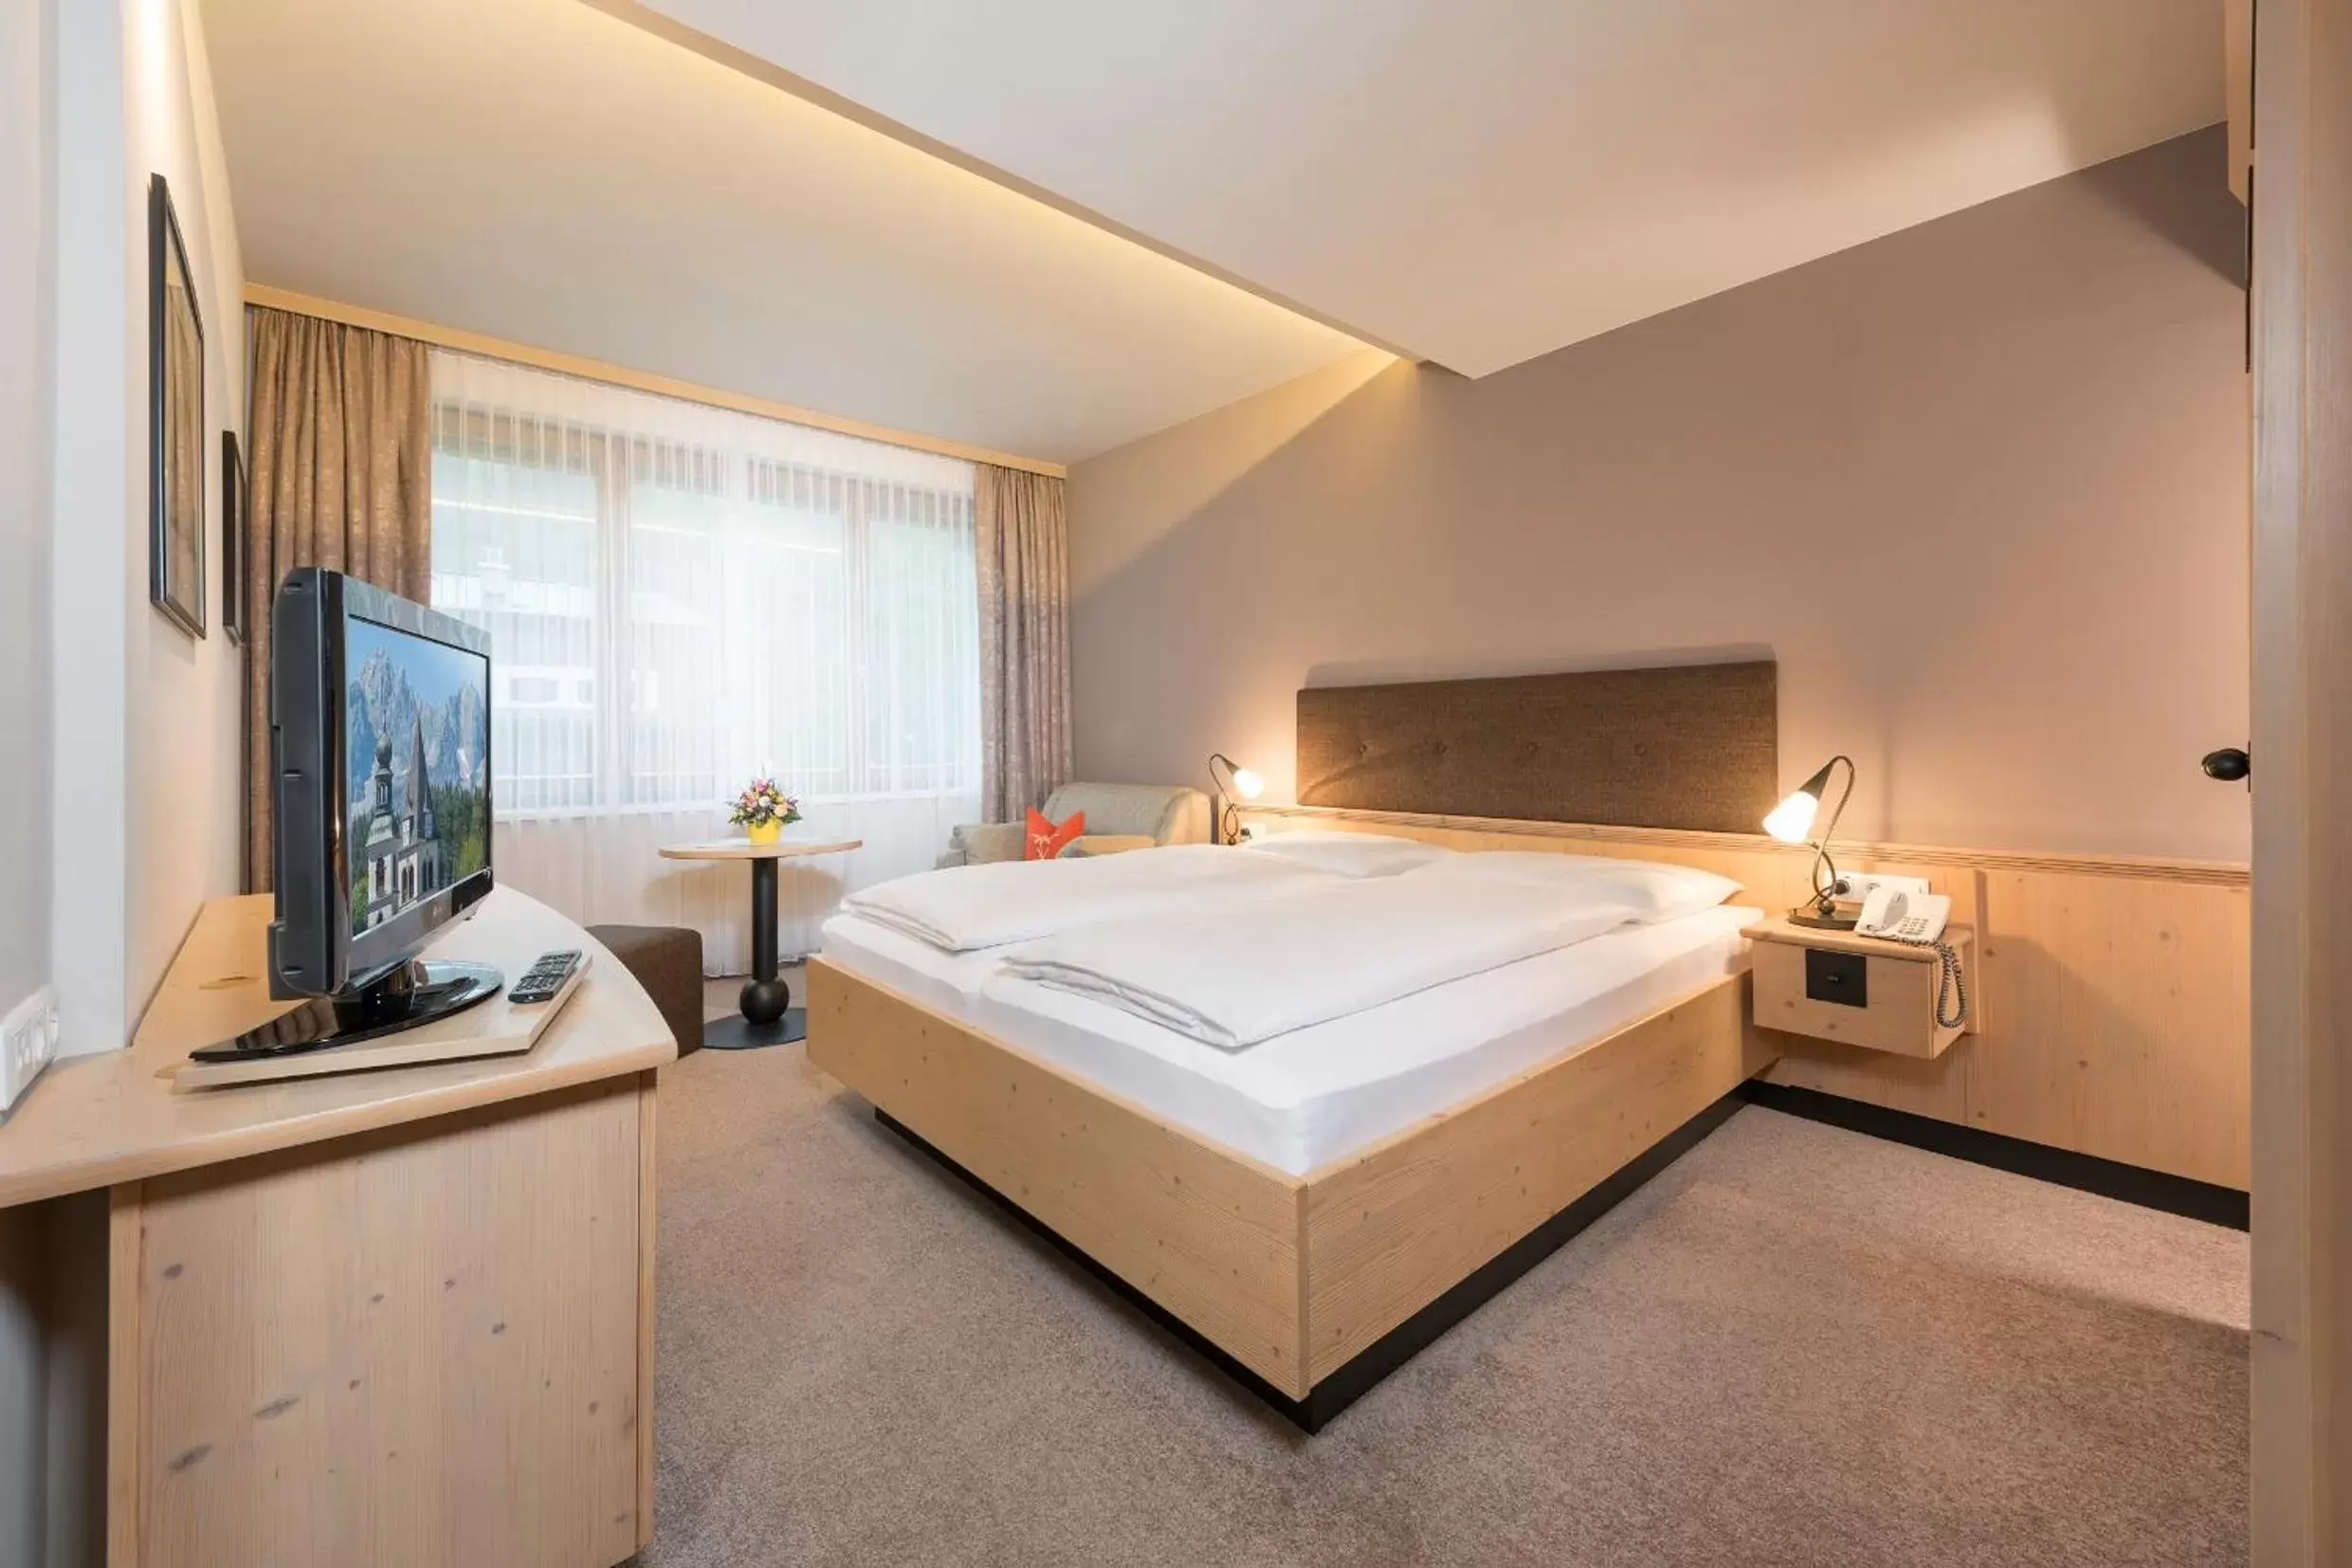 Day, Room Photo in Aktiv Hotel Schweizerhof Kitzbühel